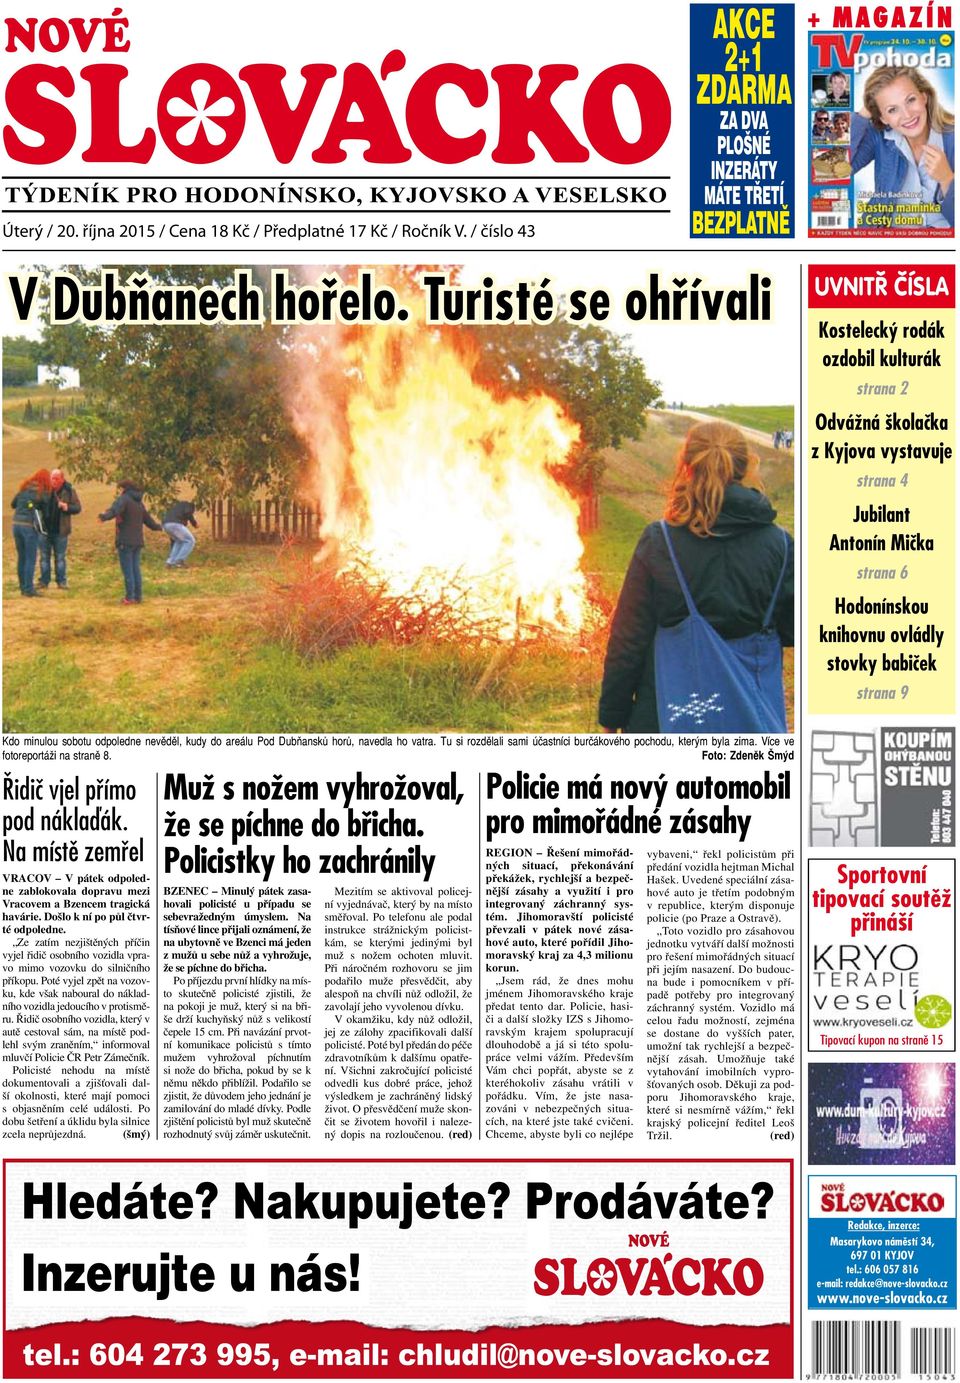 V Dubňanech hořelo. Turisté se ohřívali - PDF Stažení zdarma